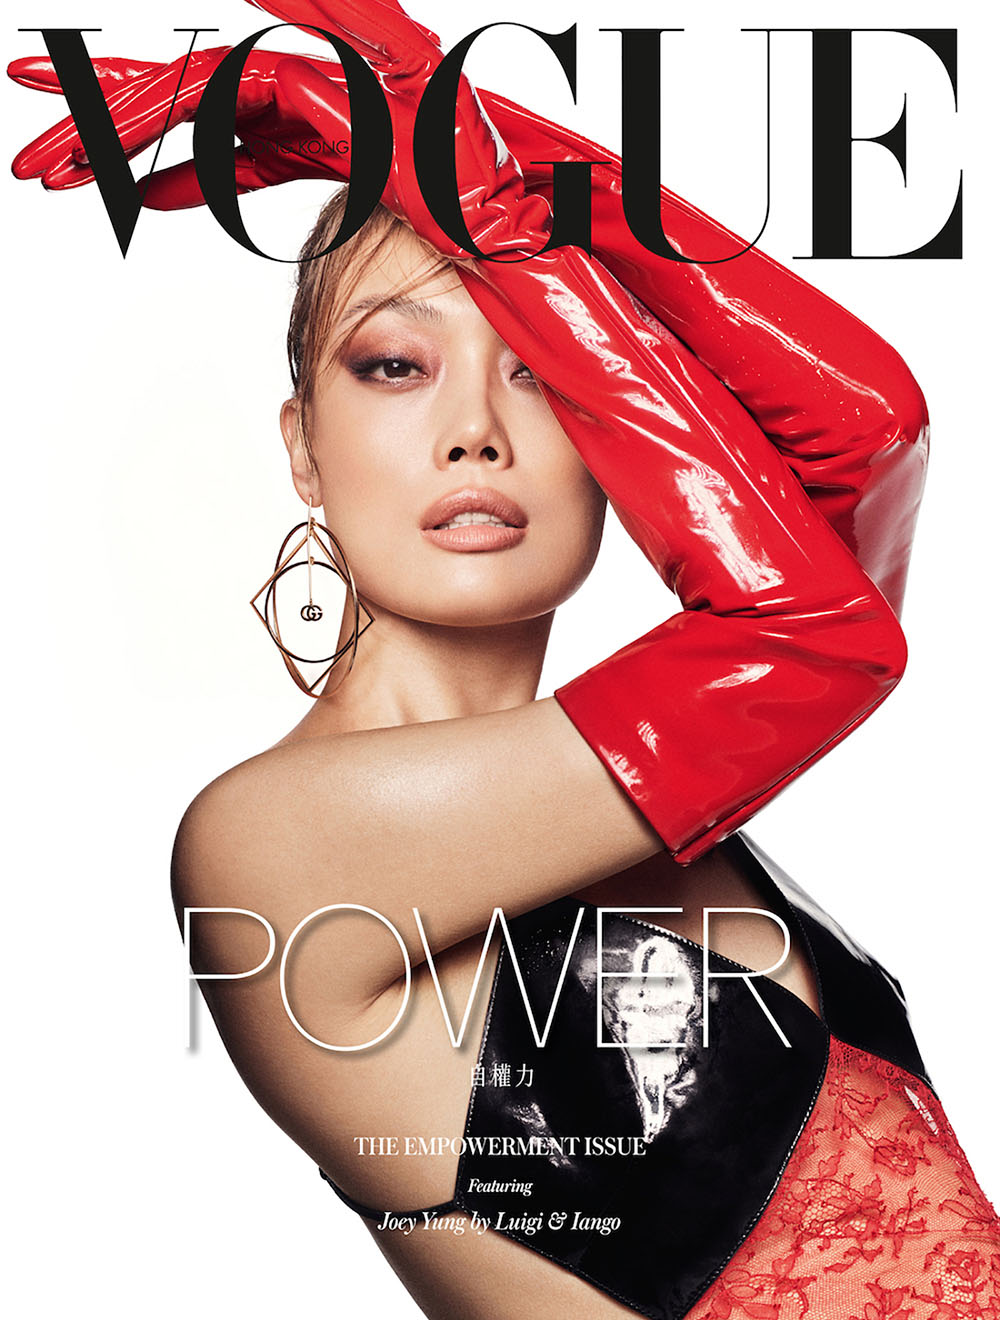 Joey Yung covers Vogue Hong Kong April 2020 by Luigi & Iango